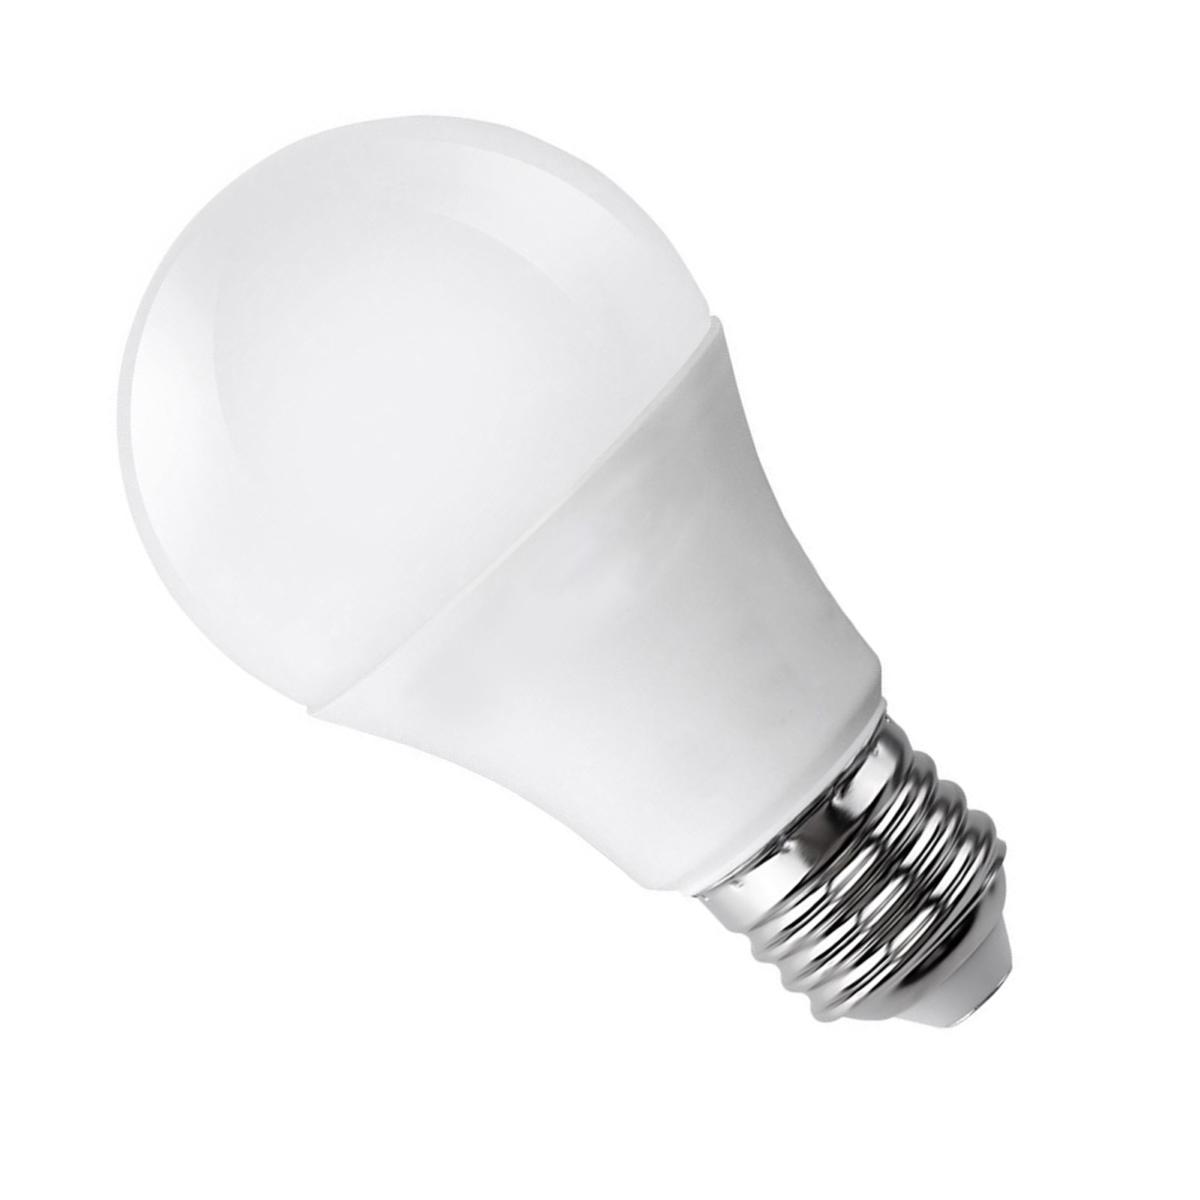 Quelle différence entre une ampoule incandescente et une LED ?